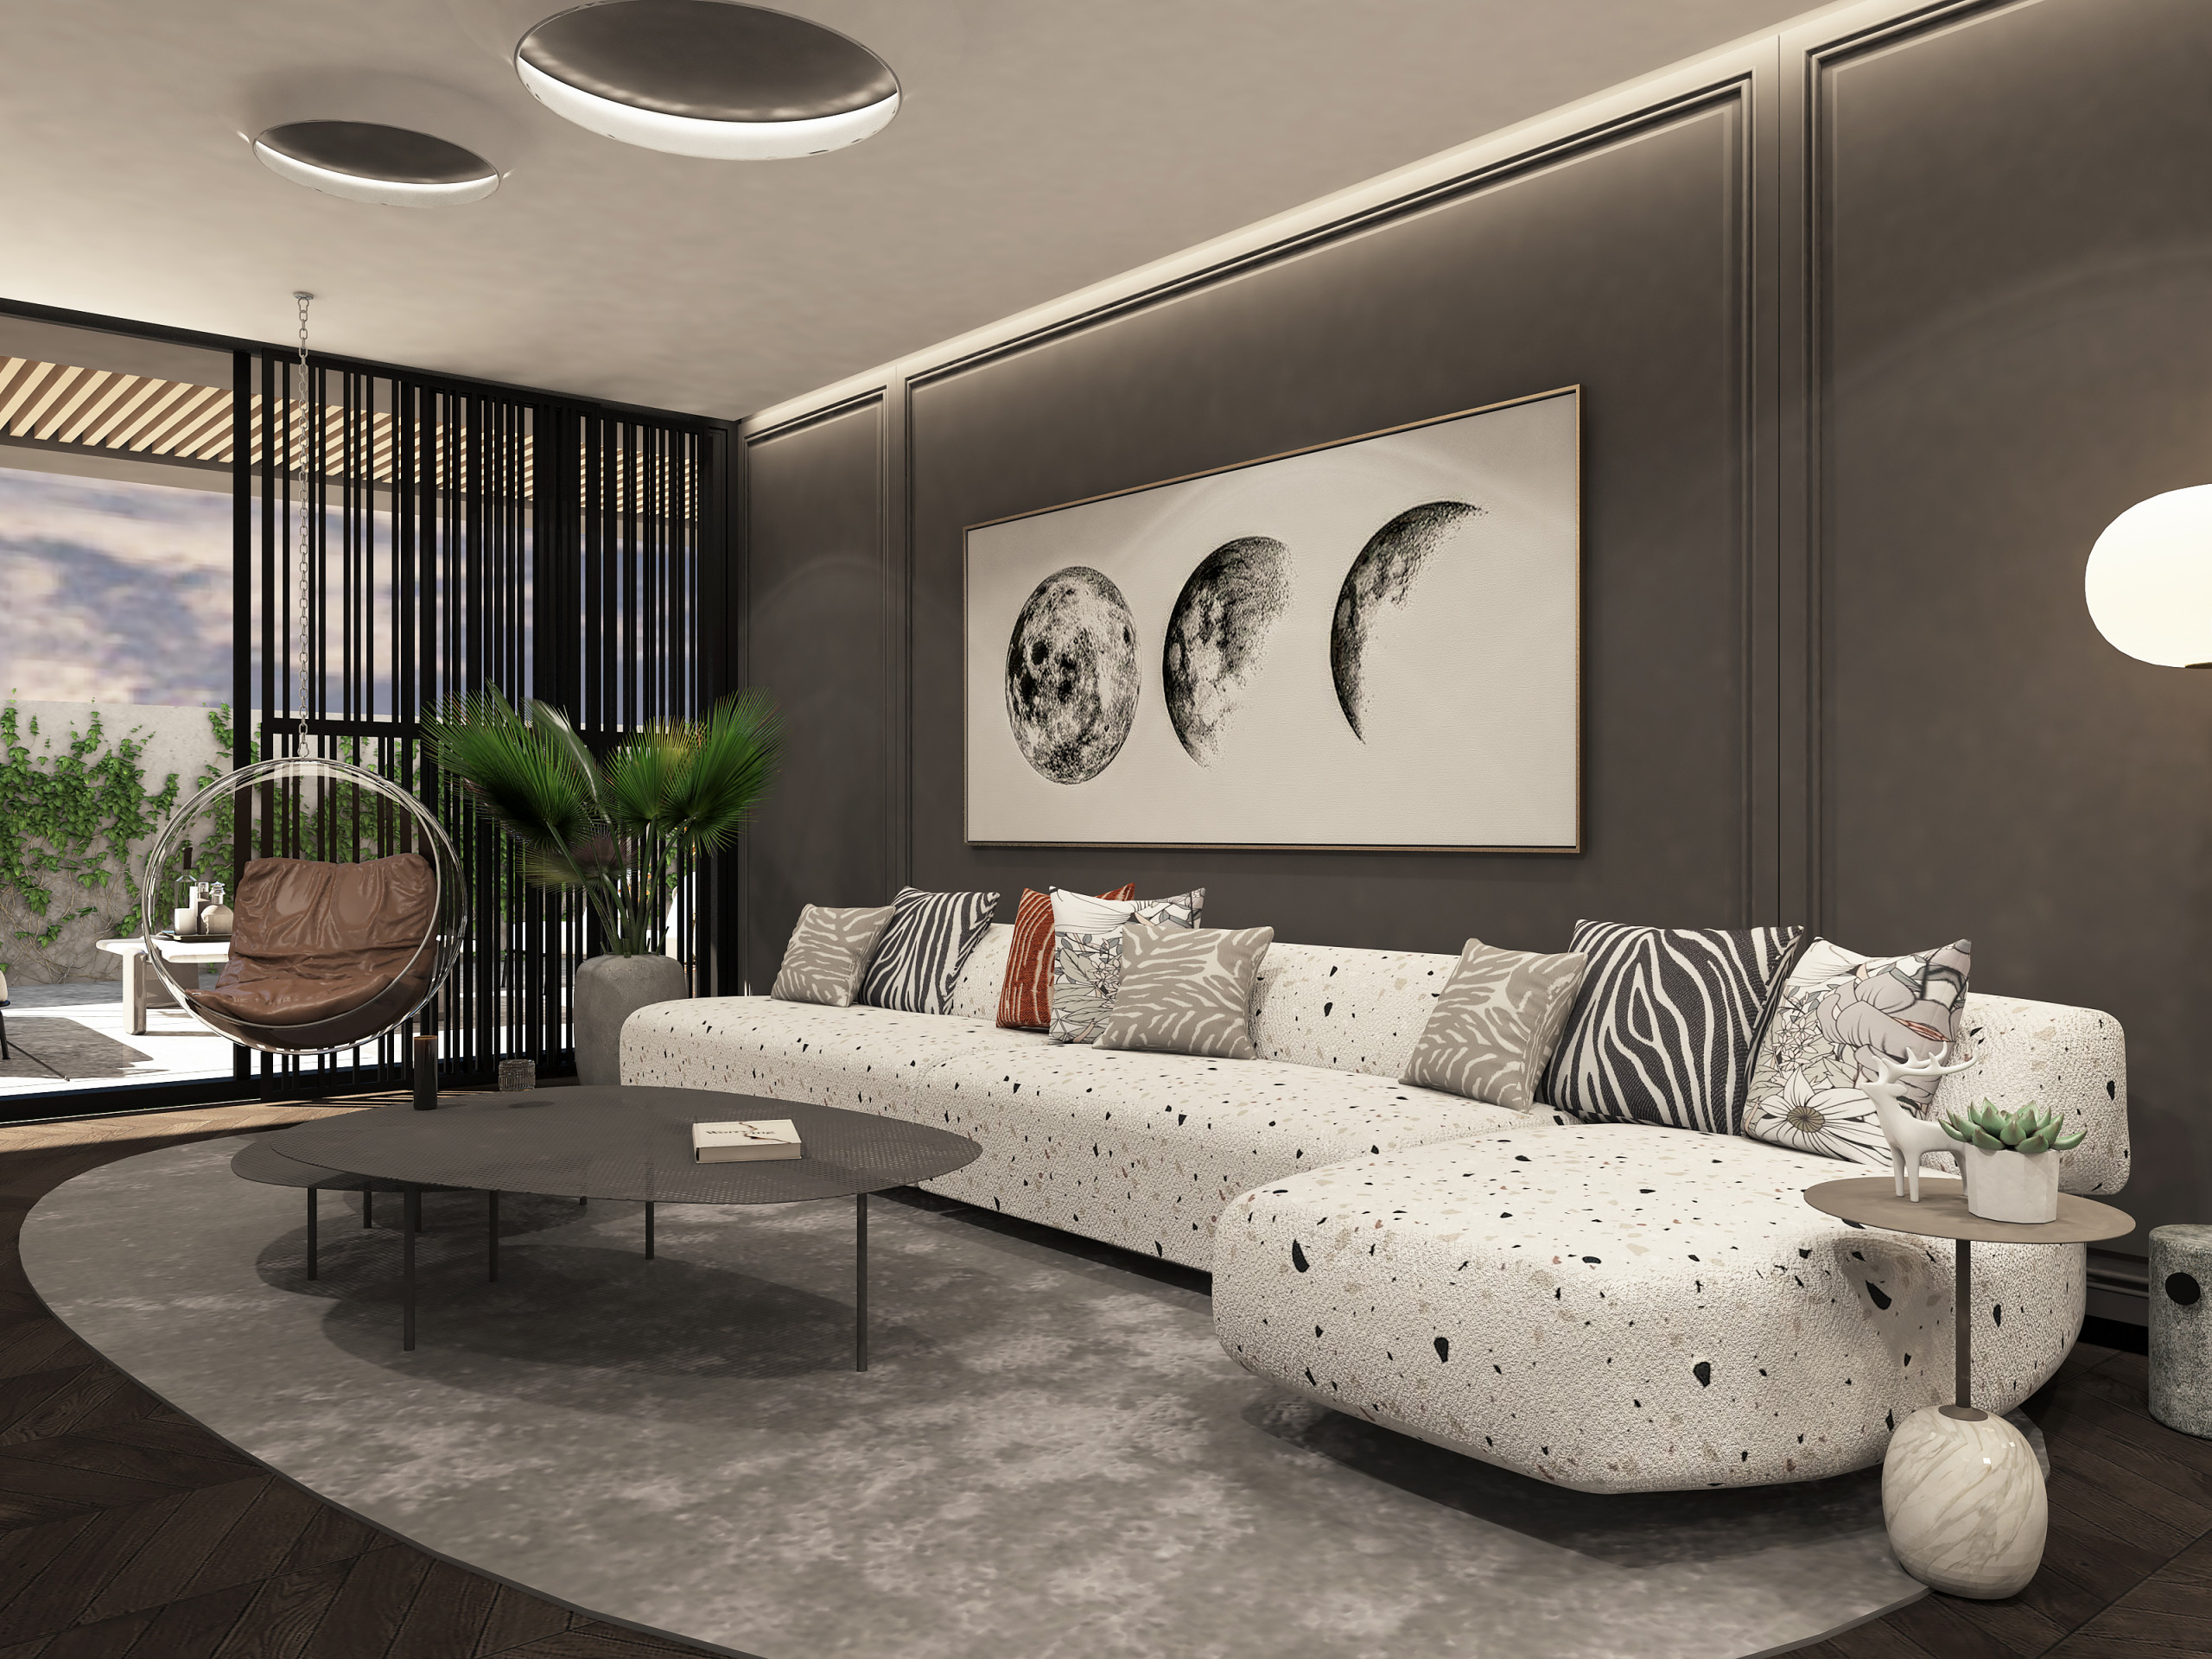 Ein geräumiges, modernes loft wohnzimmer einer luxusvilla mit ...